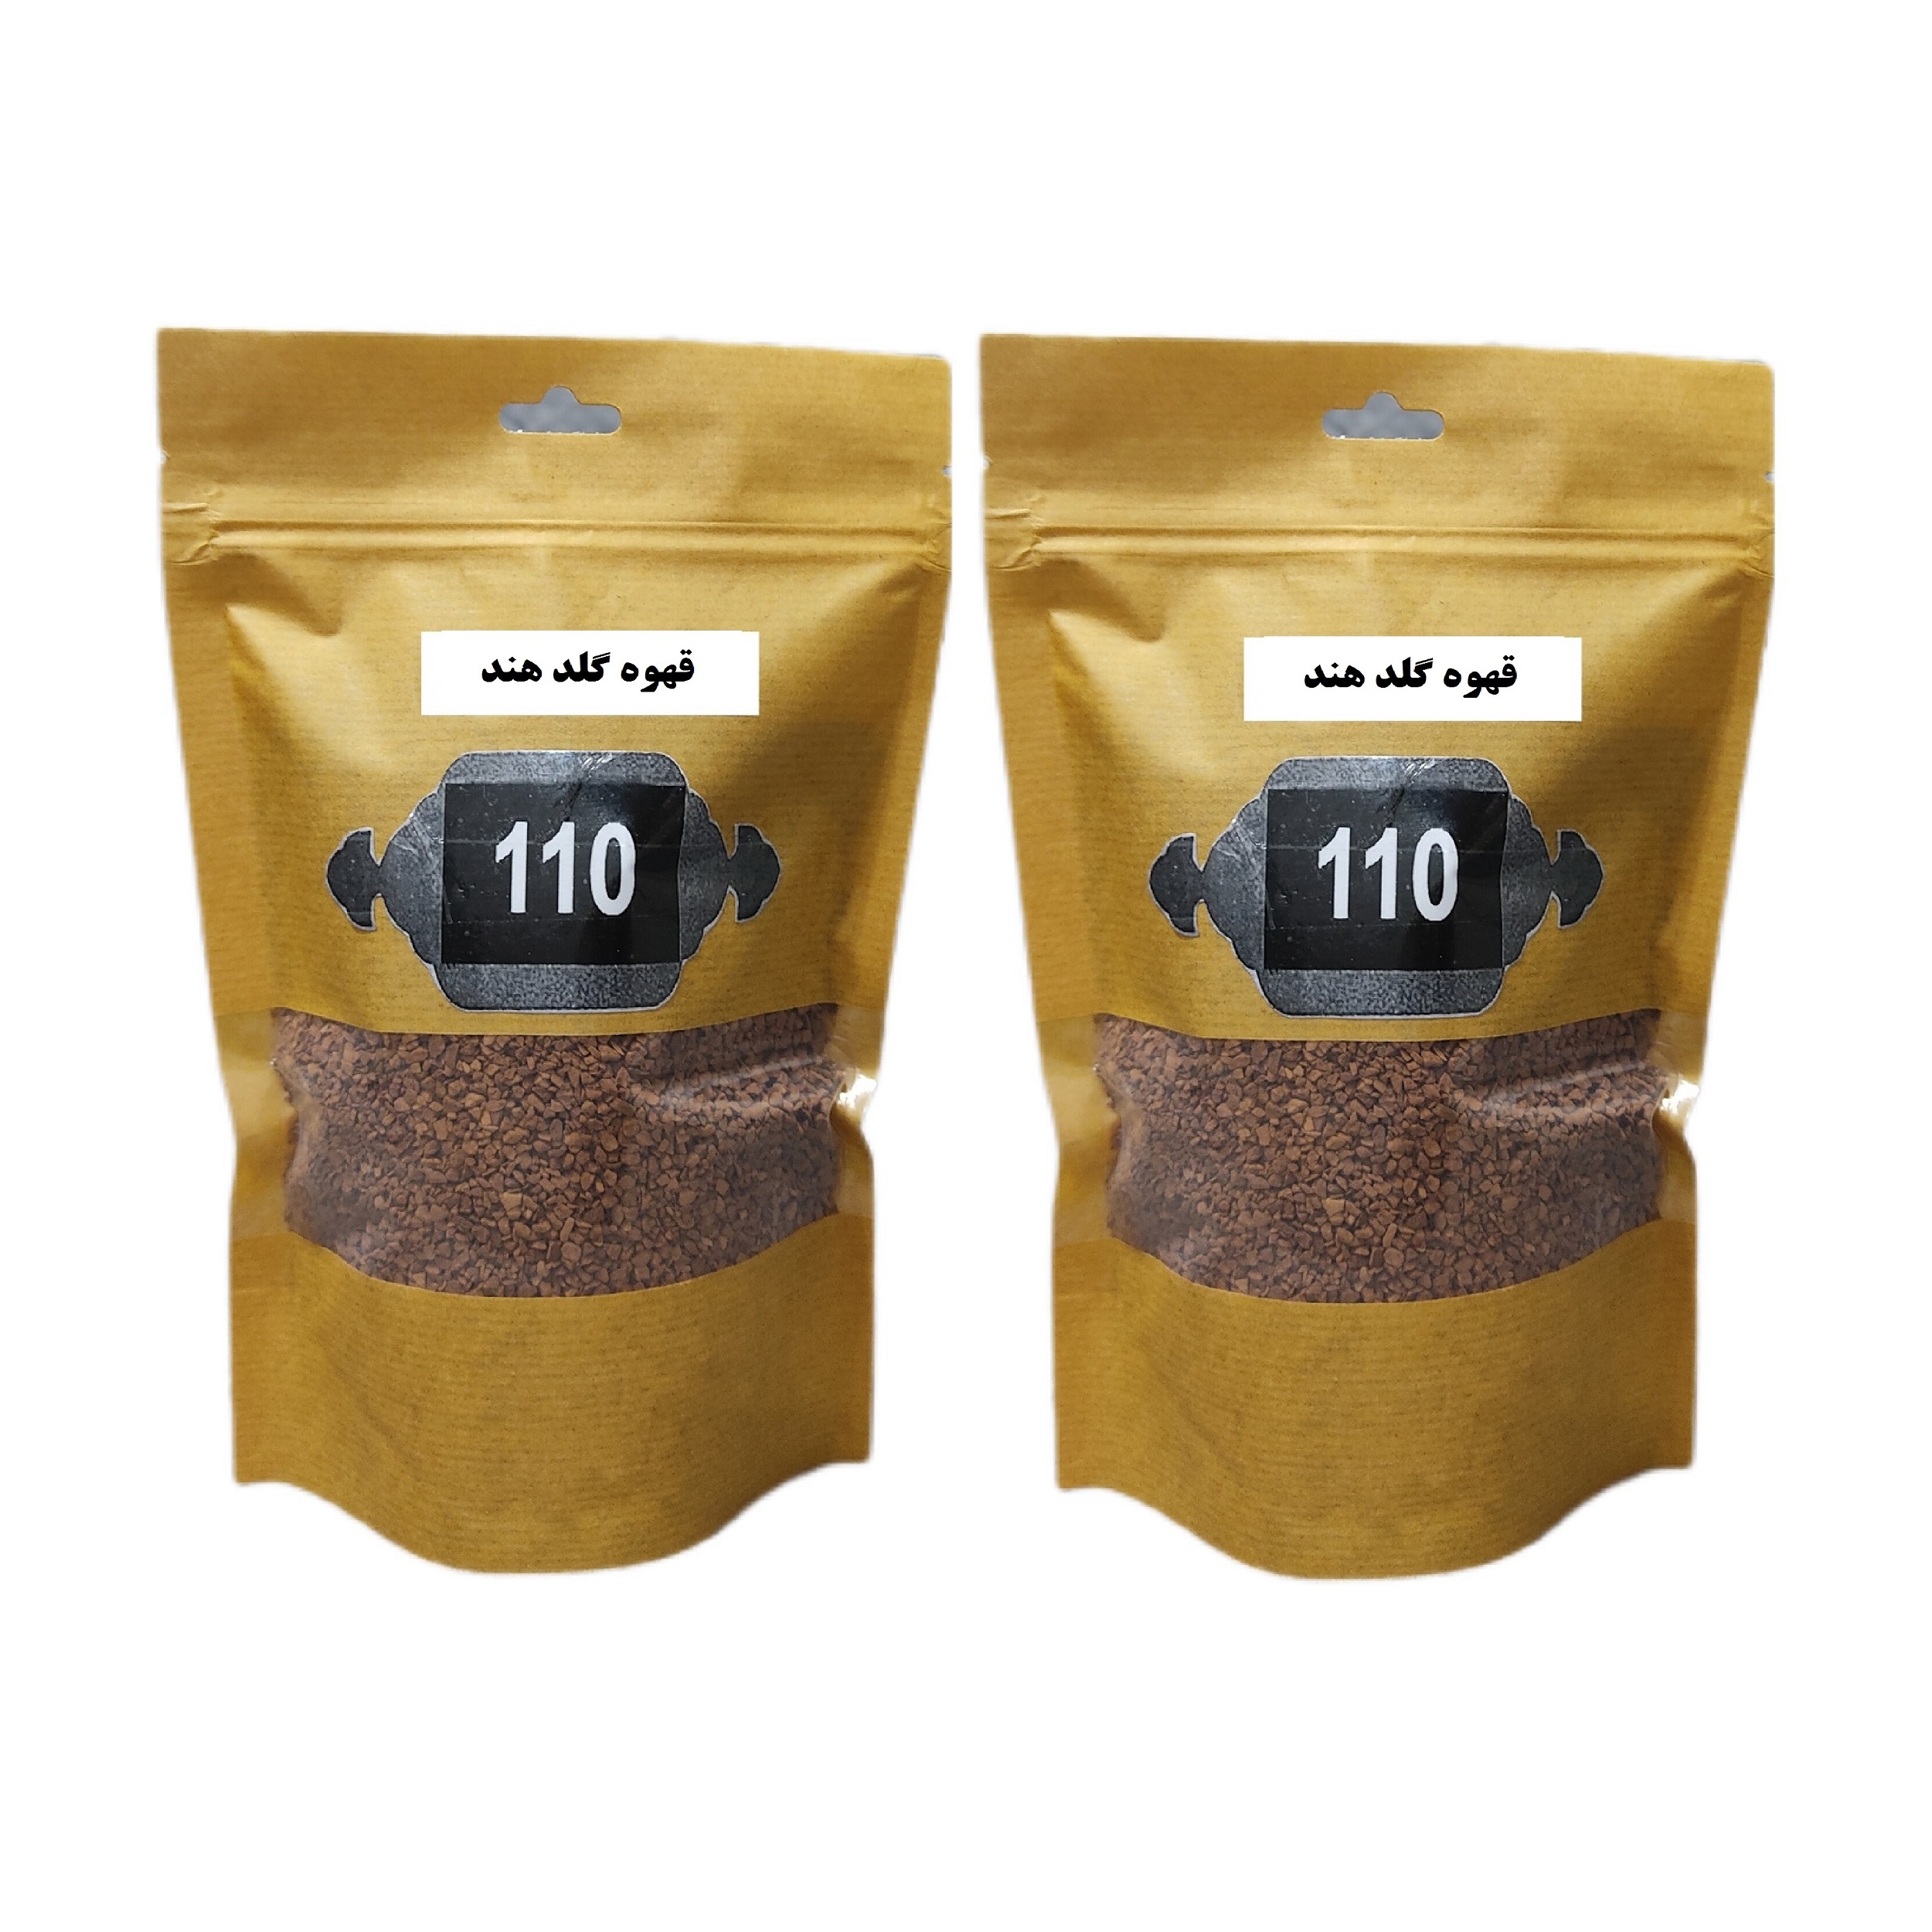 قهوه گلد هند 110 -200 گرم بسته 2 عددی